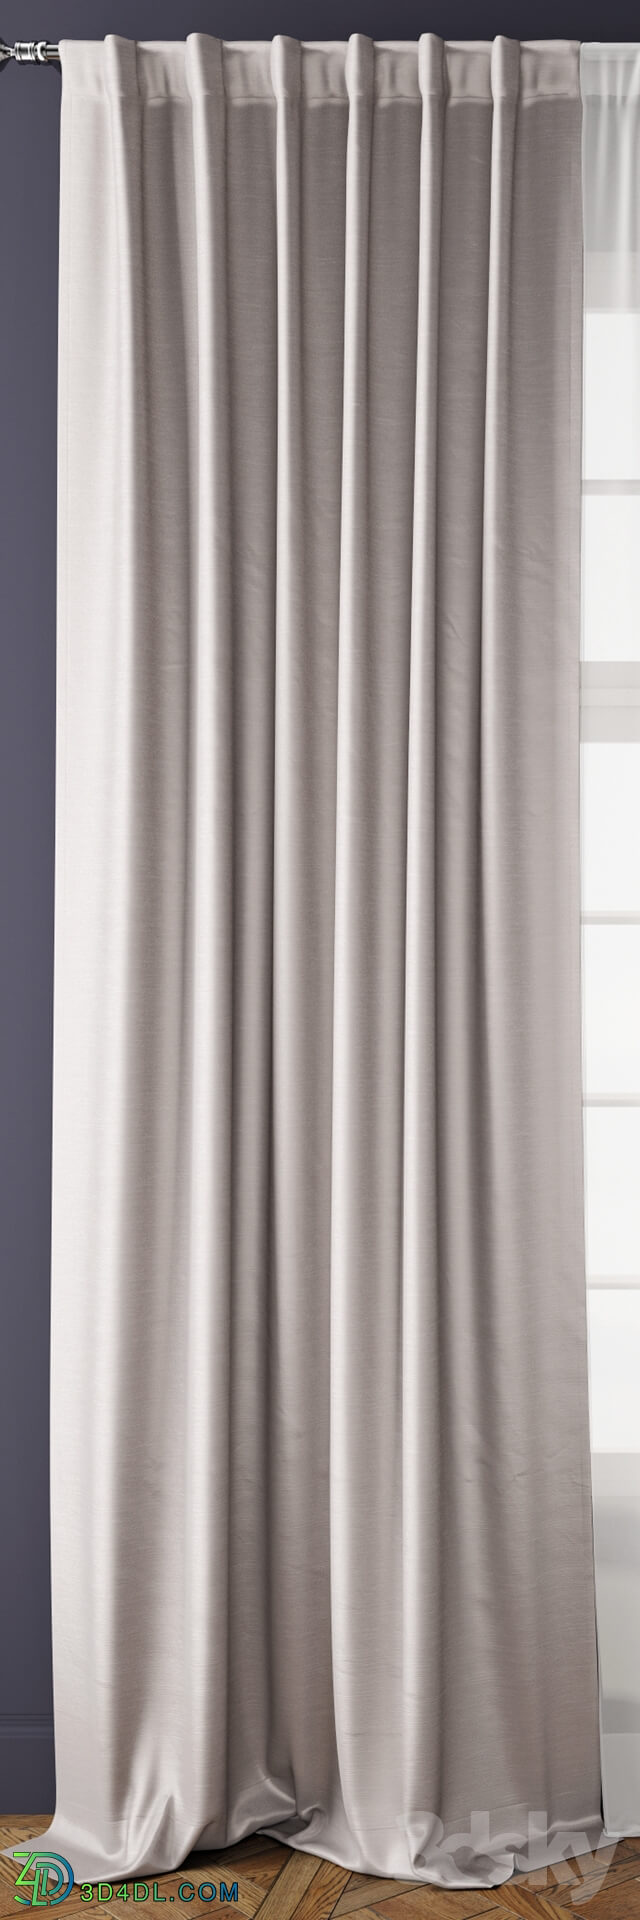 Curtain - Curtain 36